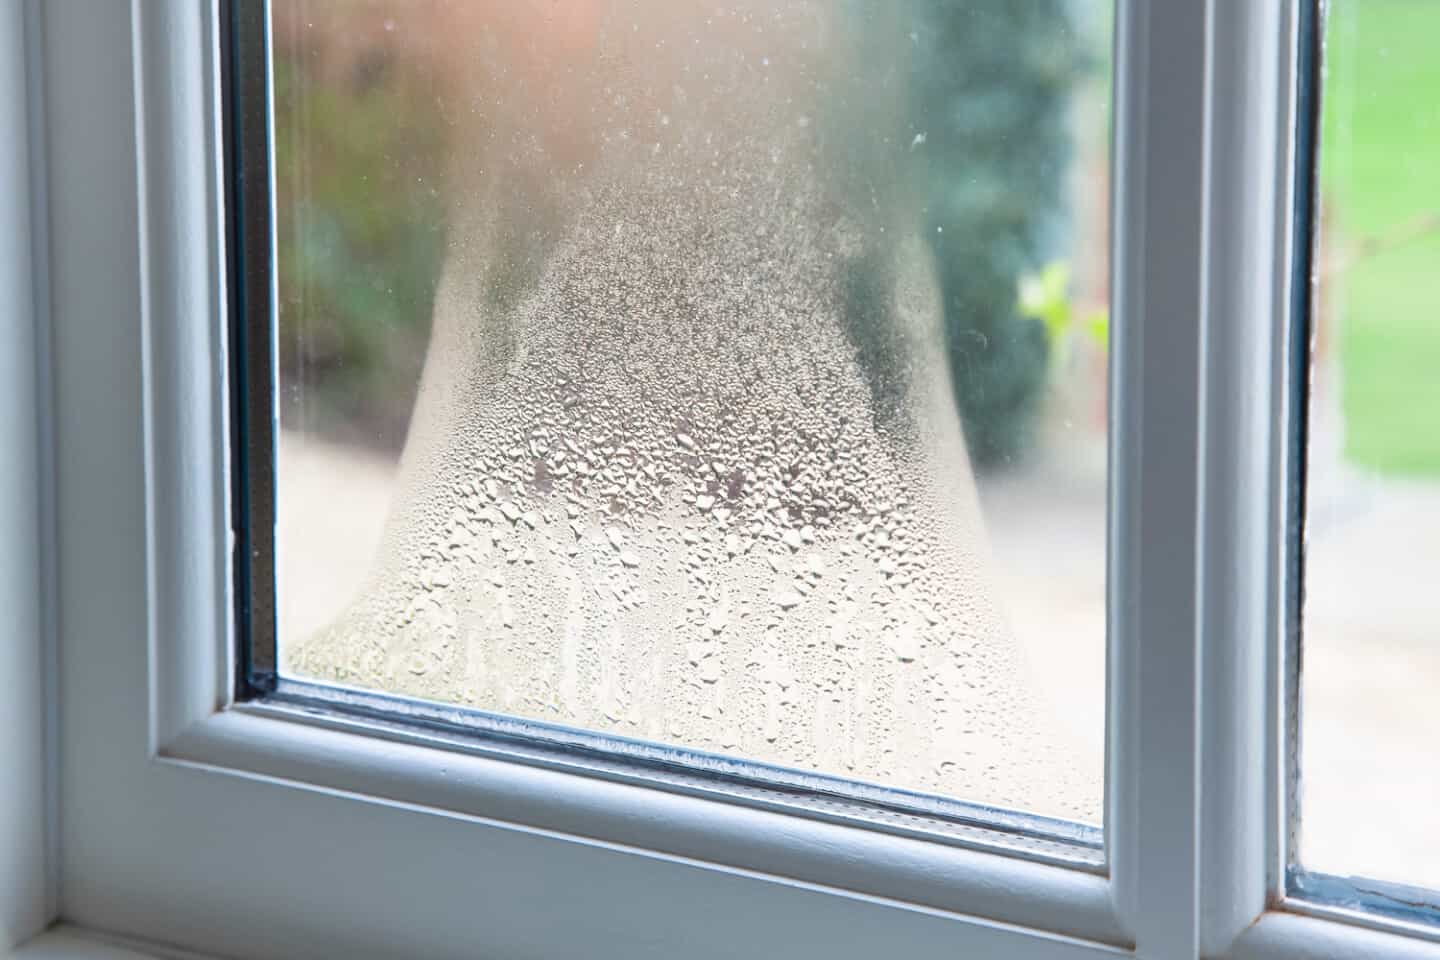 hail damage to windows water
